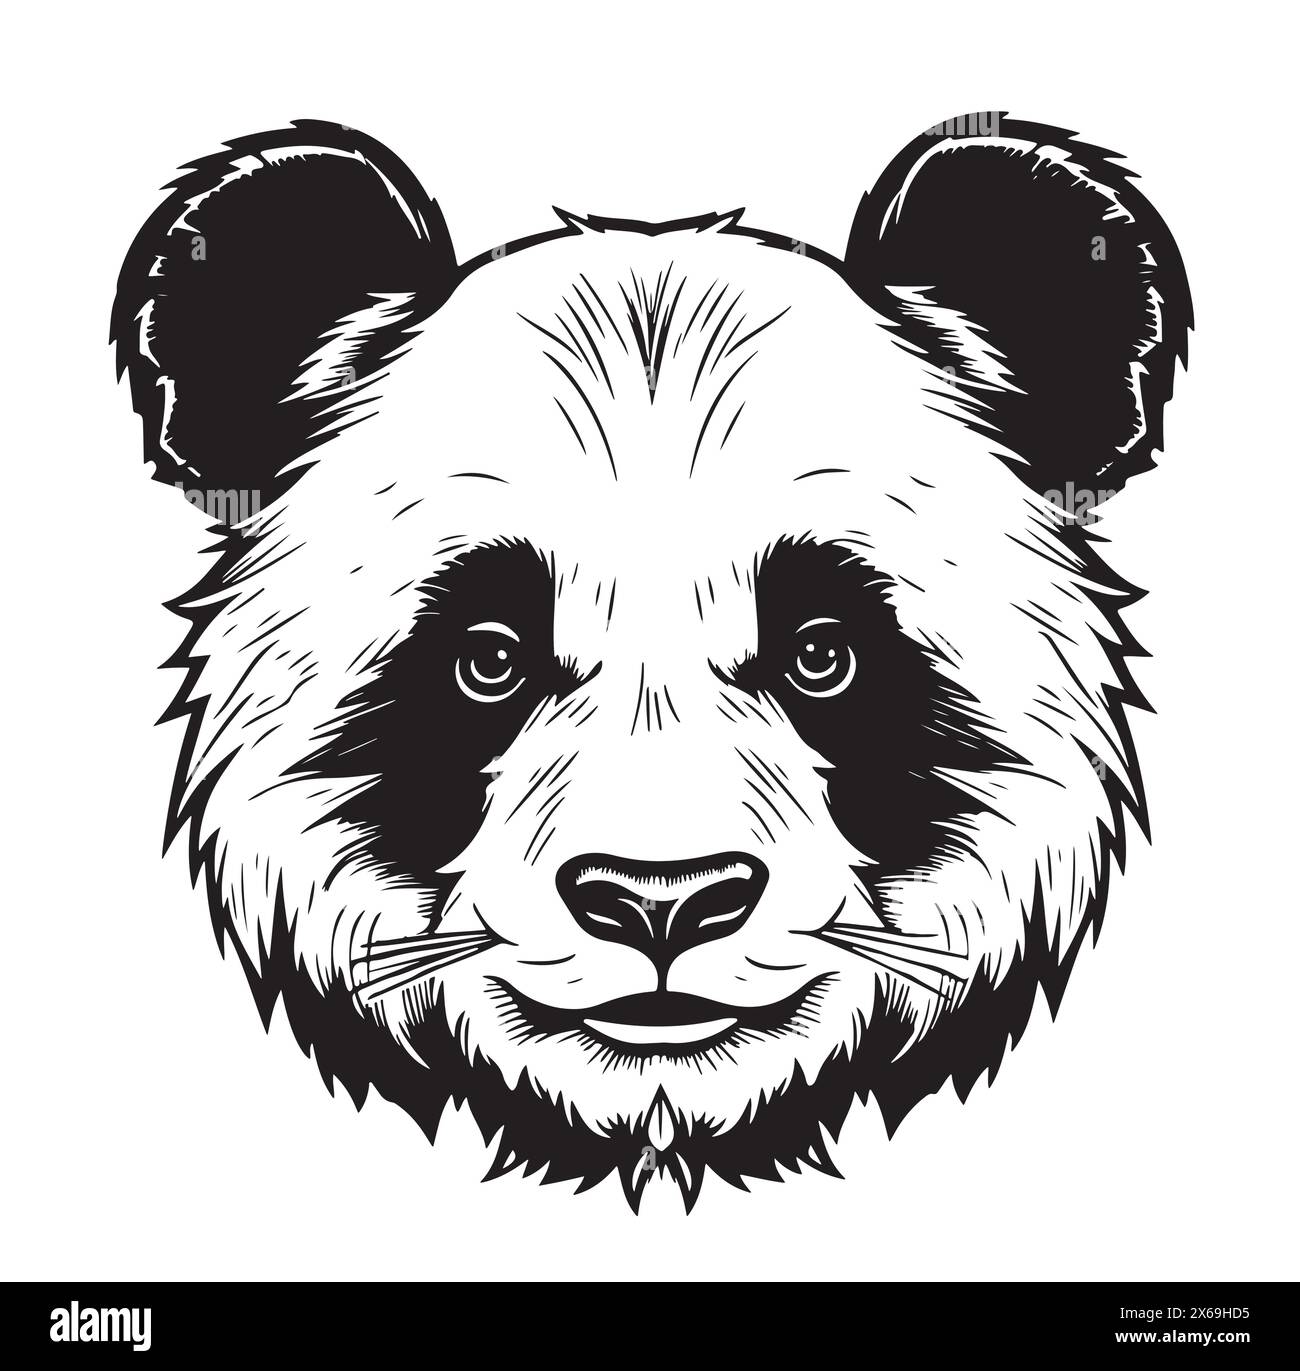 La testa Panda ha un aspetto simmetrico a destra, disegno in bianco e nero con grafica vettoriale di schizzo Illustrazione Vettoriale